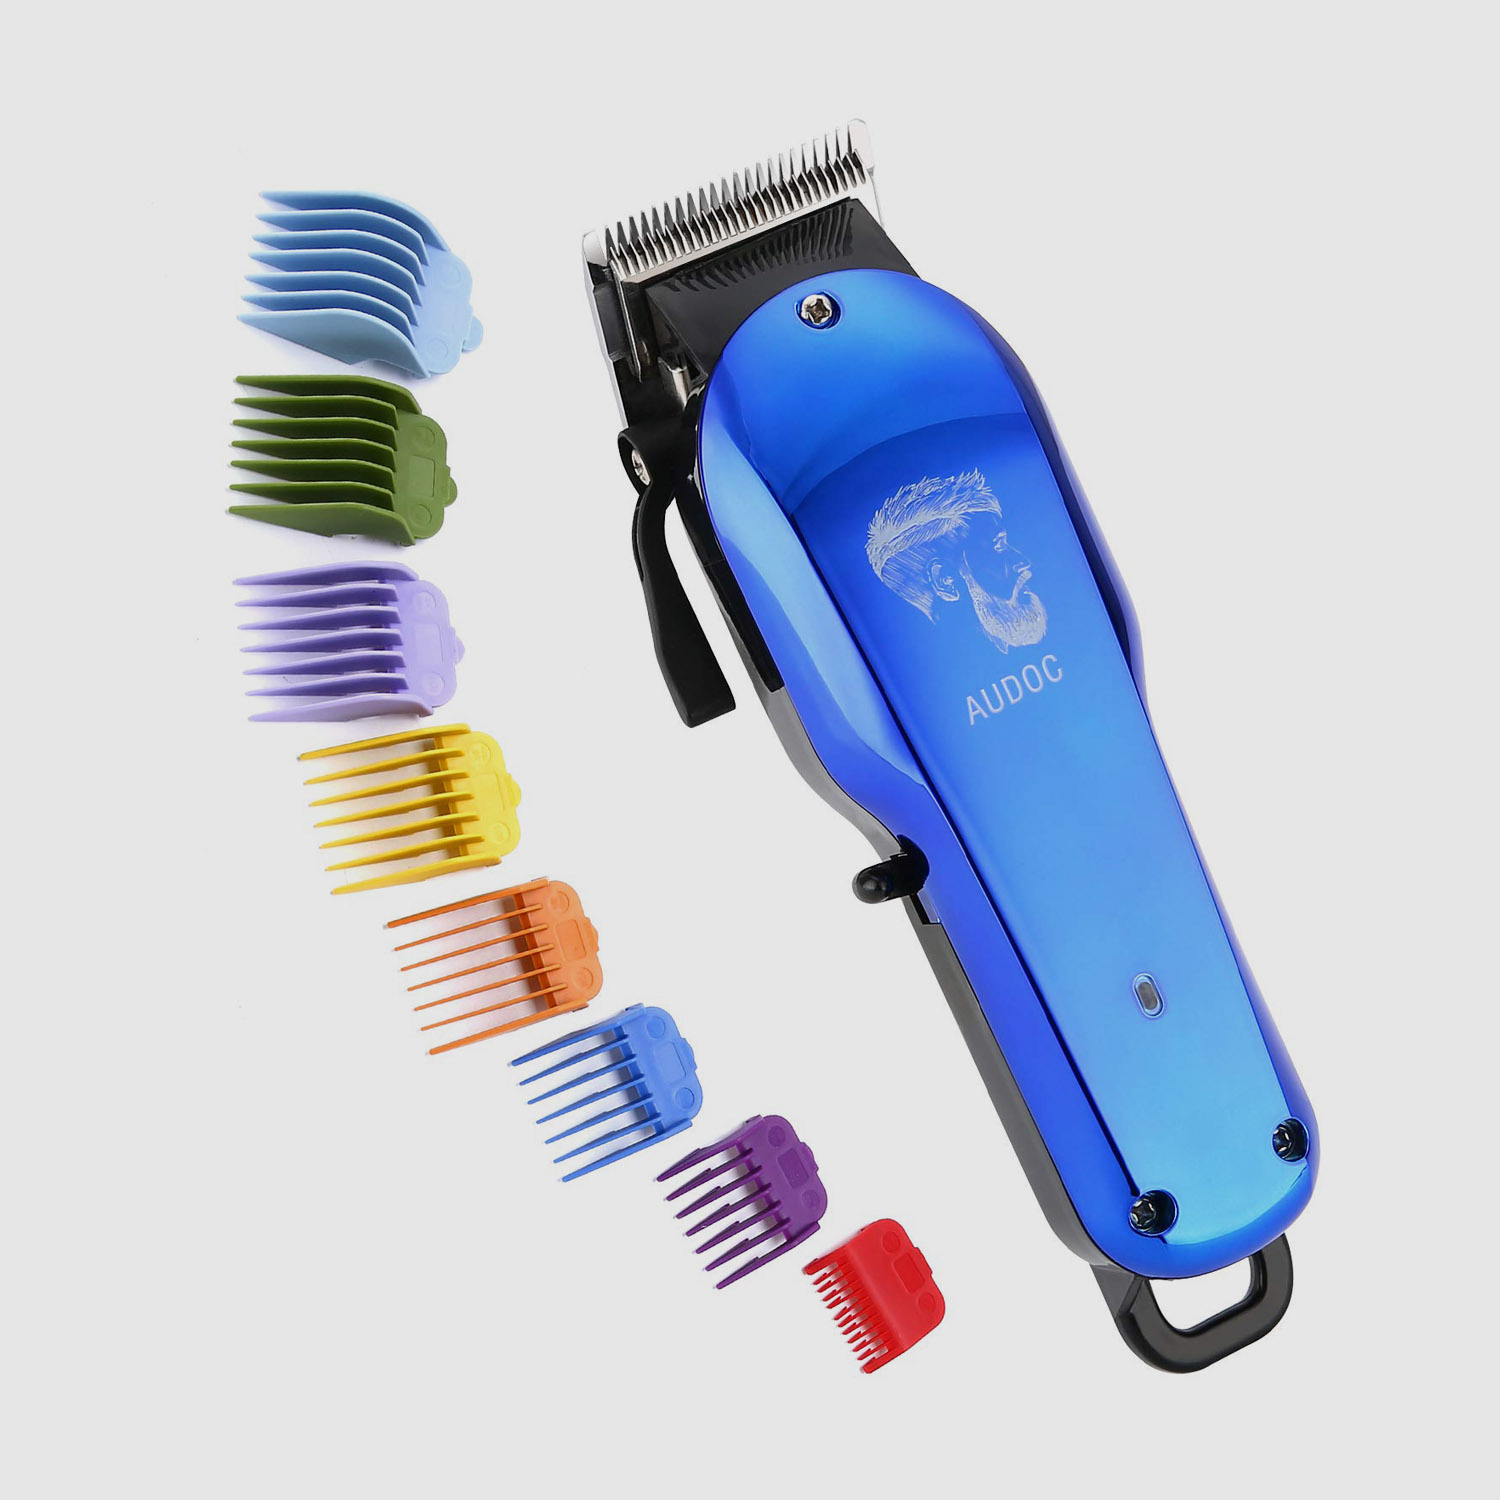 Kit de corte de cabelo para cabeleireiros masculinos.